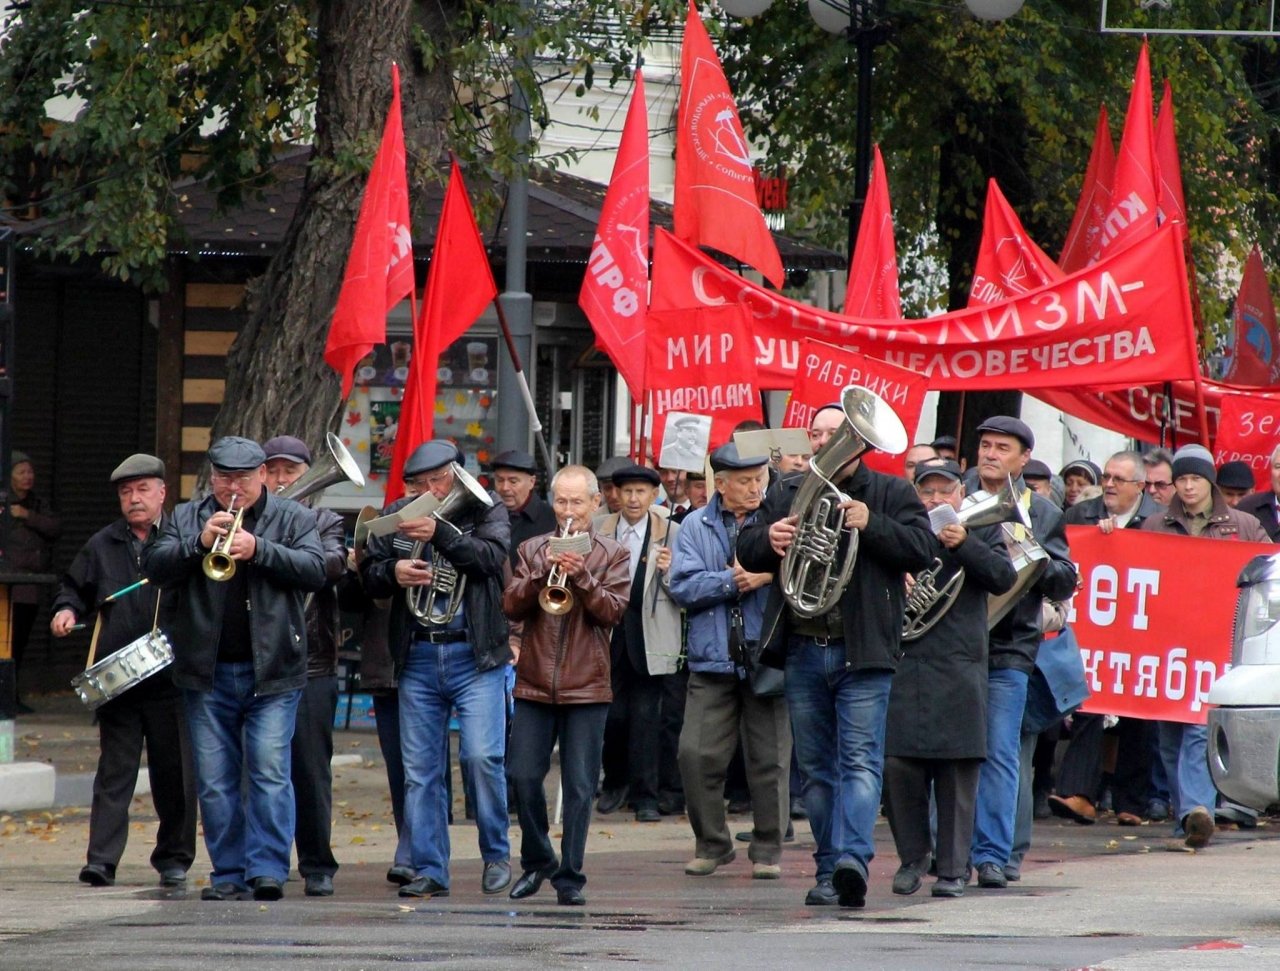 Фото митинга и демонстрации в честь 100-летия Великого Октября в Феодосии #5683